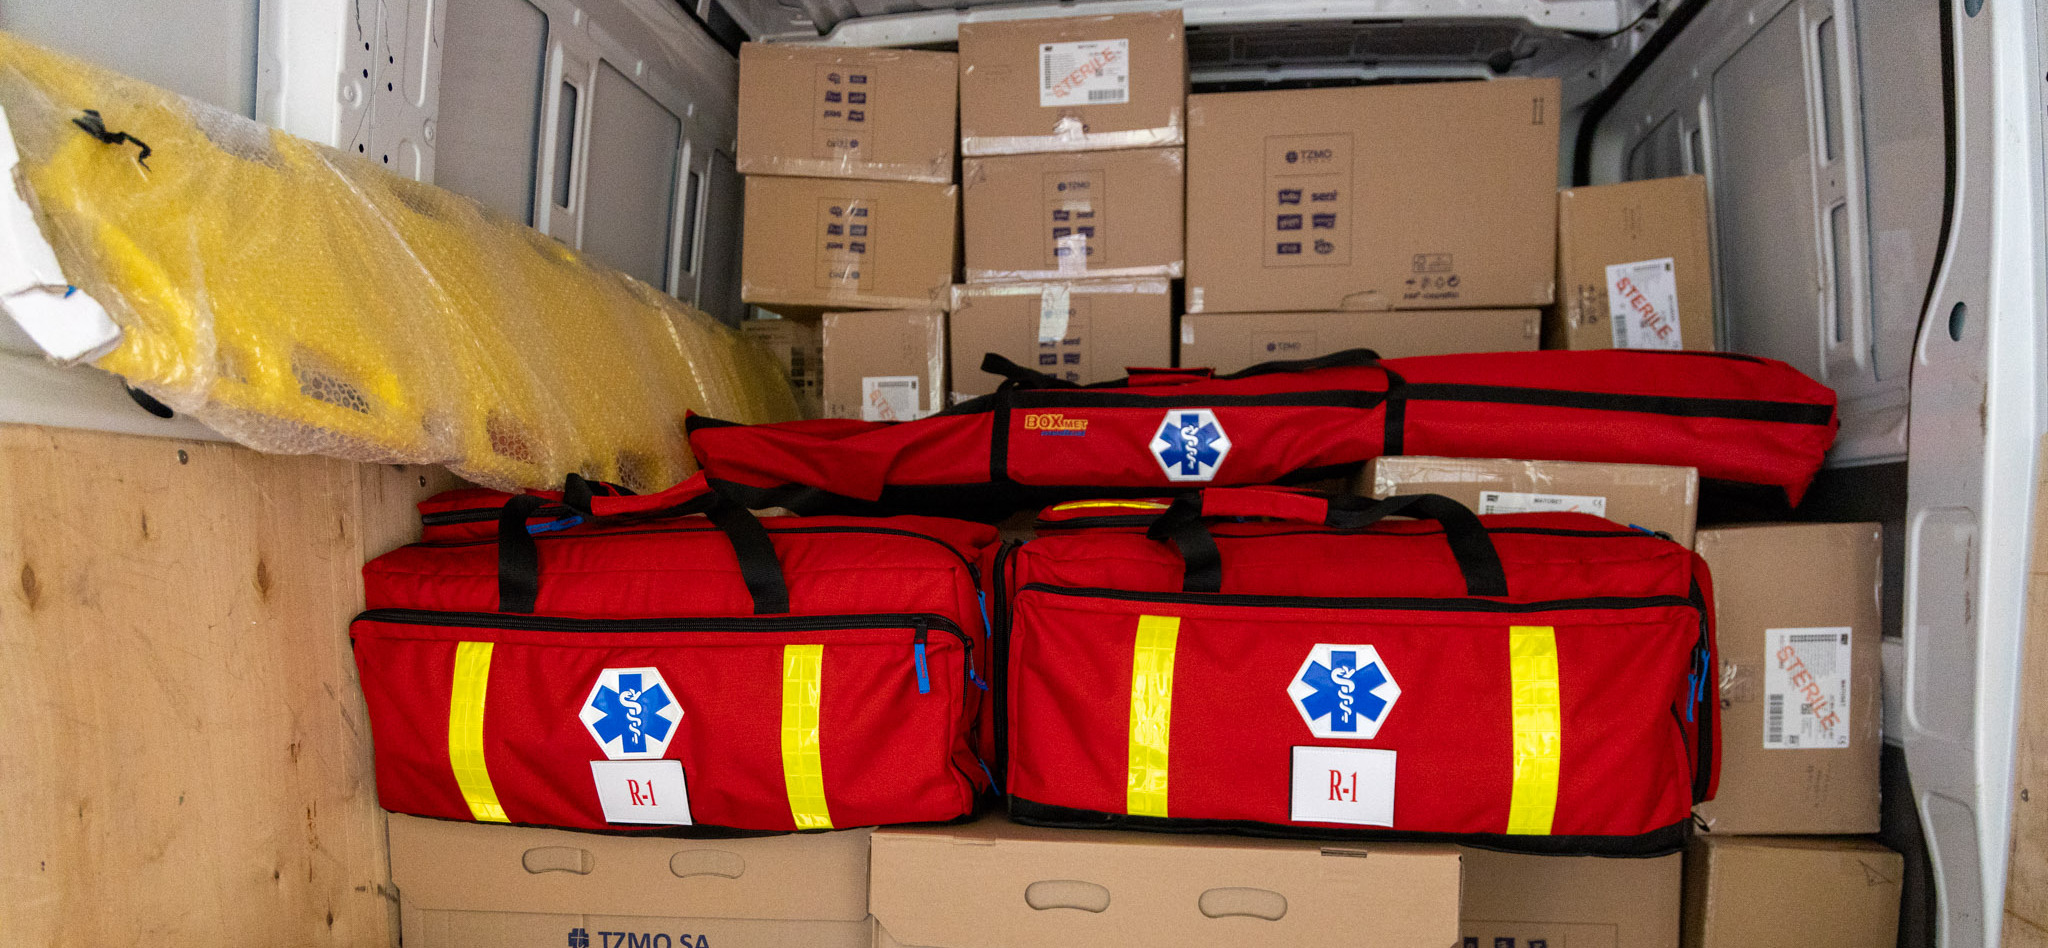 Czerwone torby medyczne i pudełka kartonowe znajdujące się w białym busie.